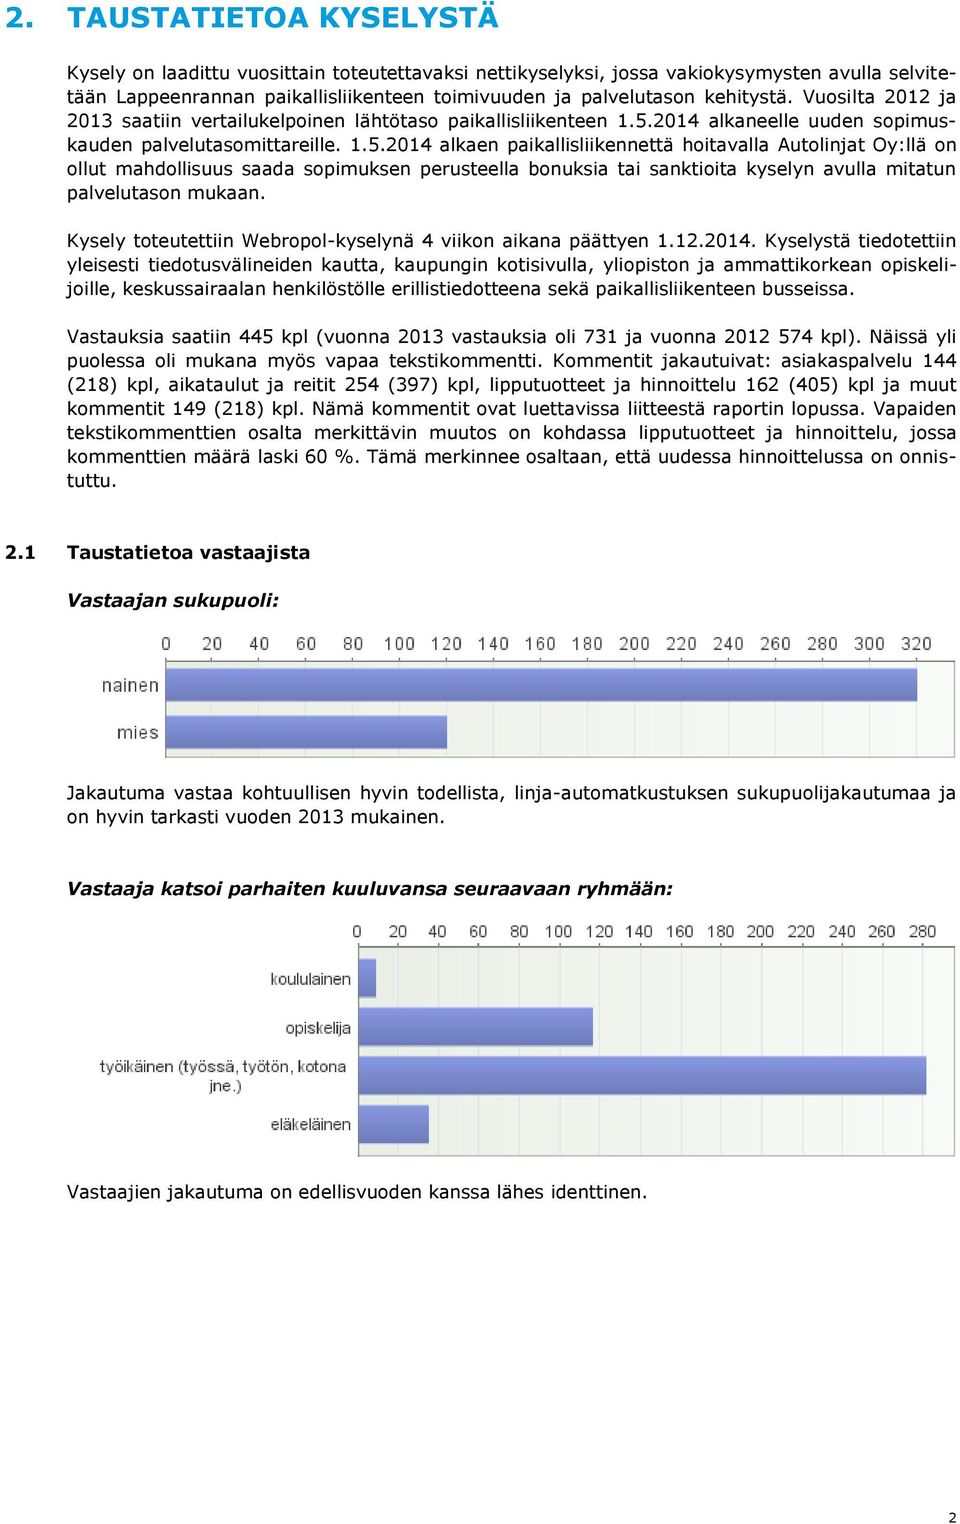 2014 alkaneelle uuden sopimuskauden palvelutasomittareille. 1.5.